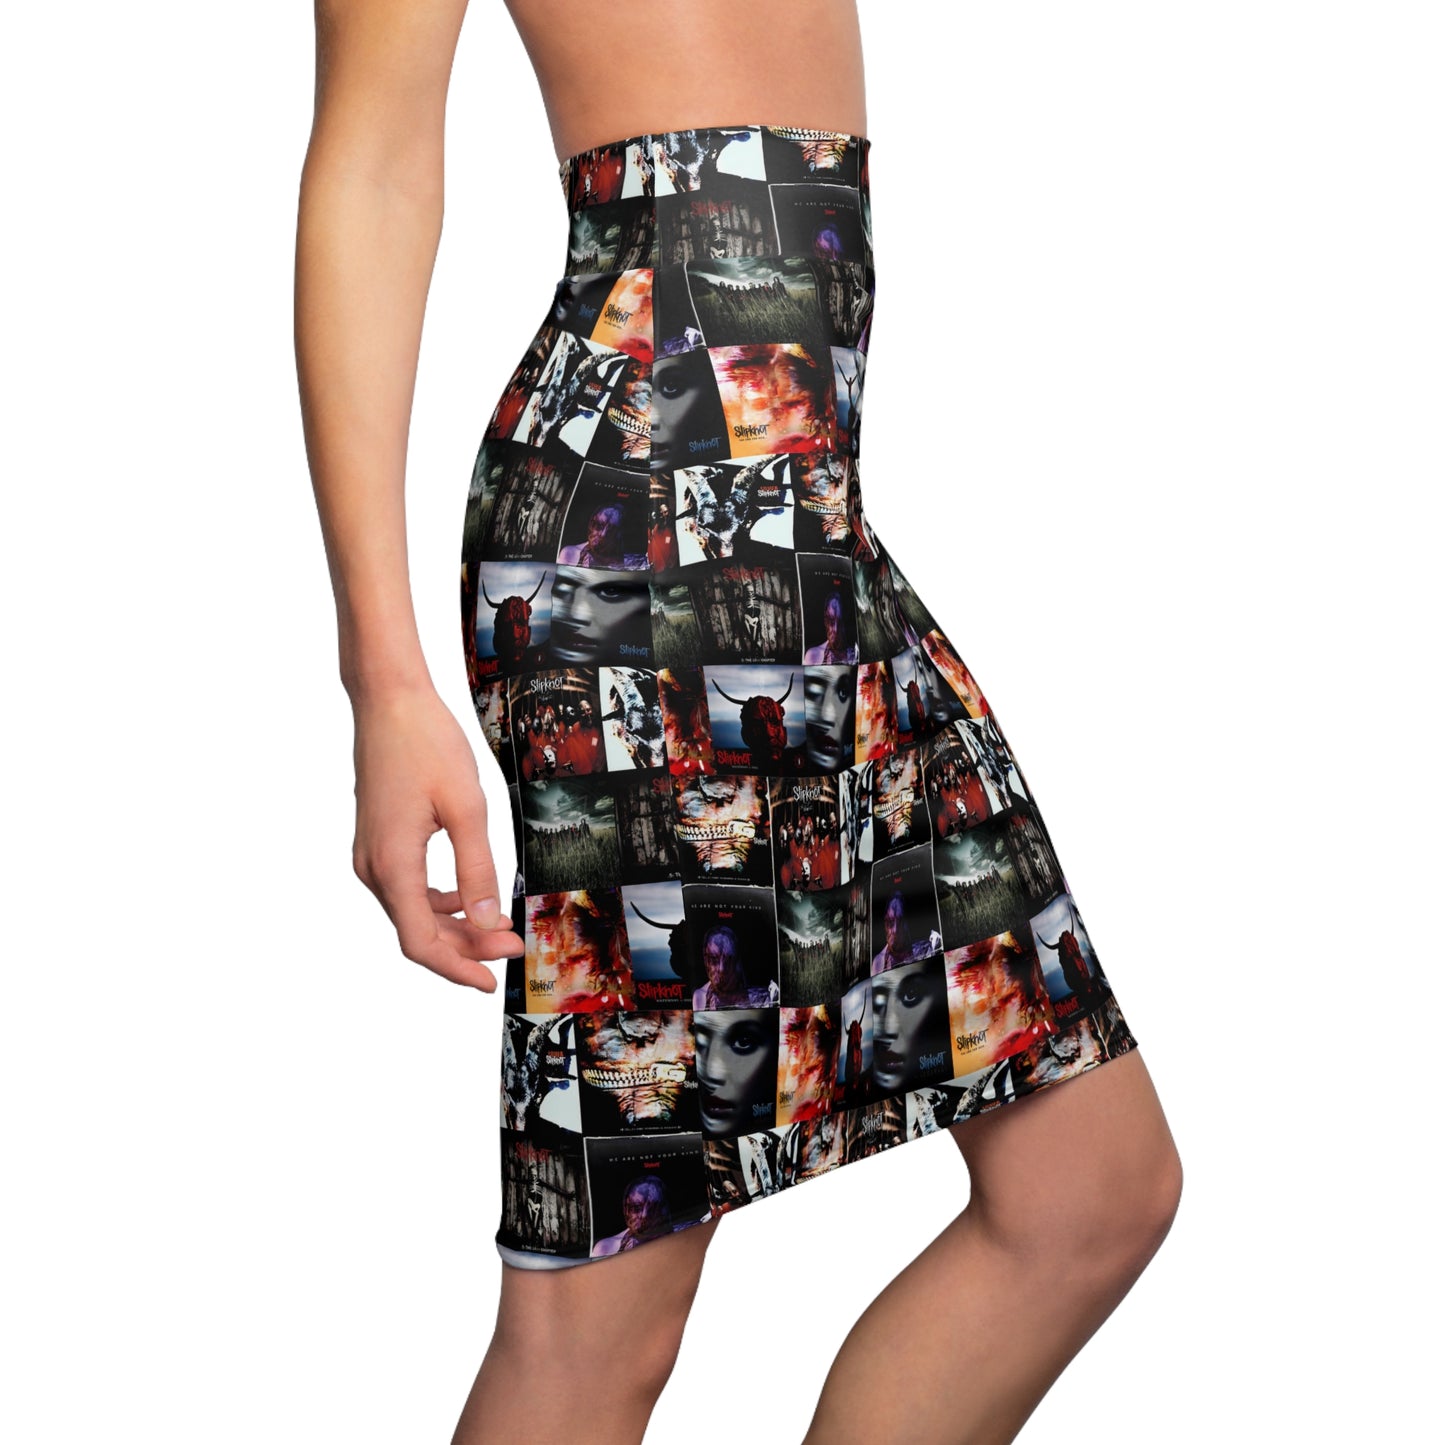 Slipknot Album Art Collage Women's Pencil Skirt